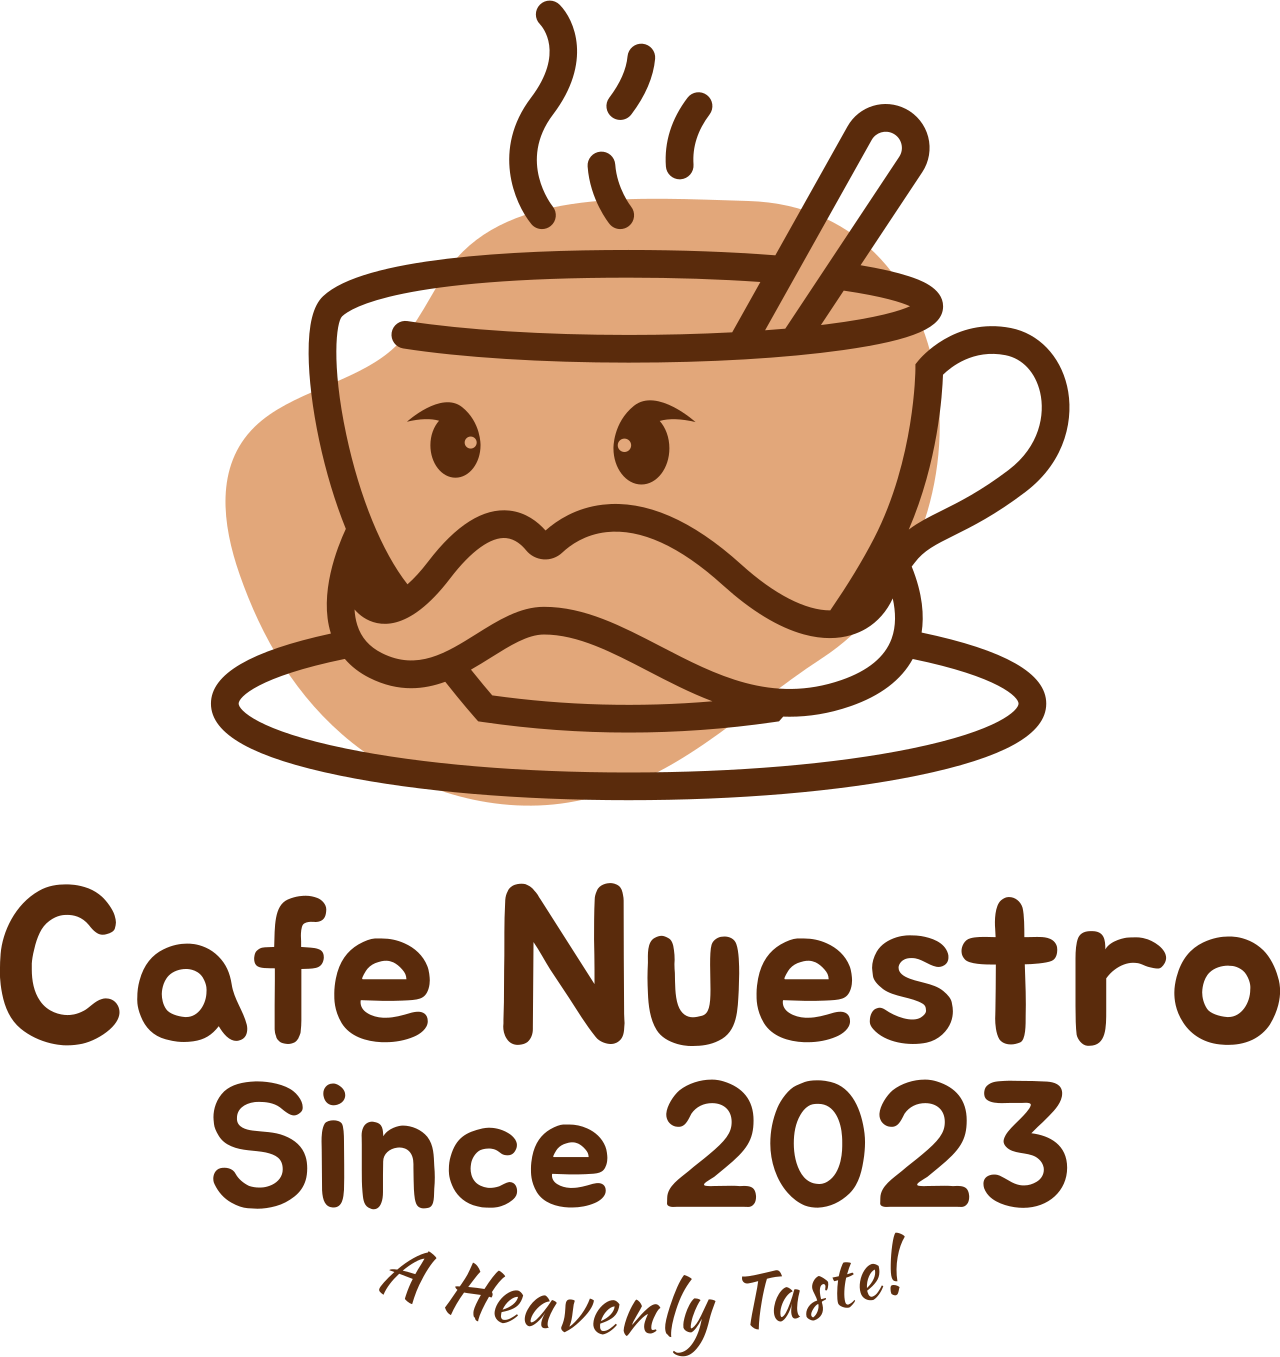 Cafe Nuestro's logo